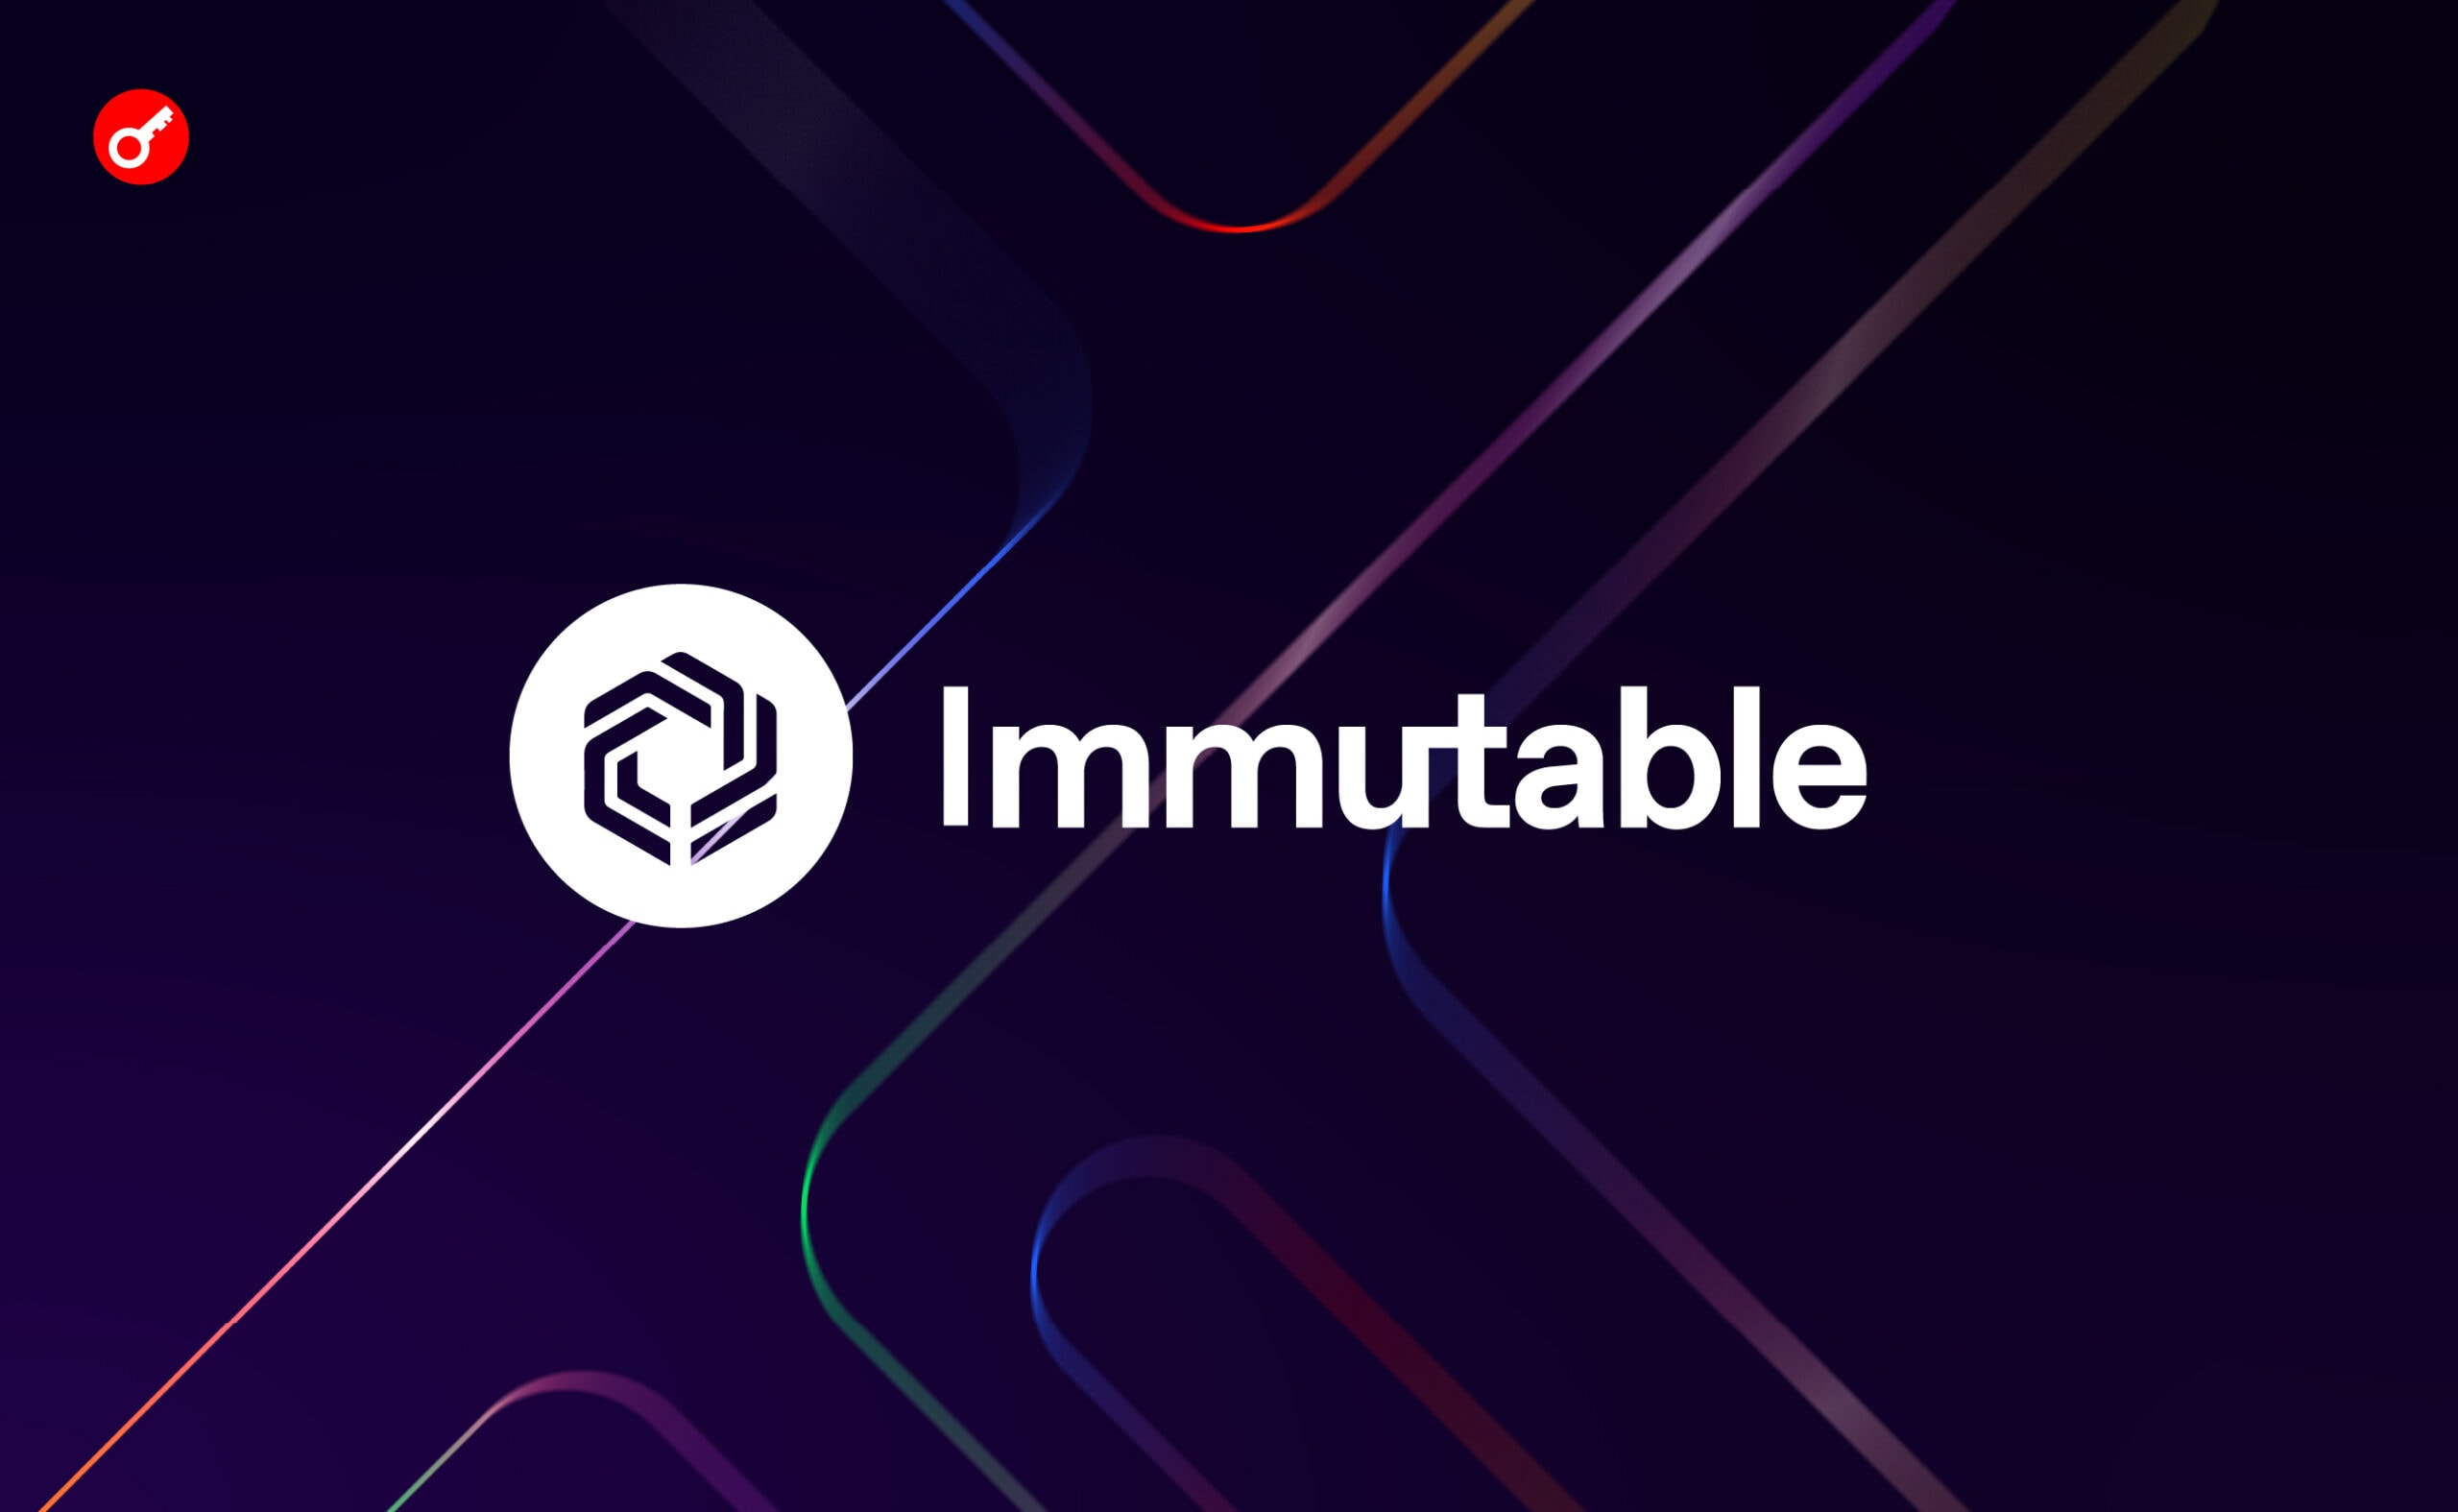 Immutable запустила програму винагород для гравців на $50 млн. Головний колаж новини.